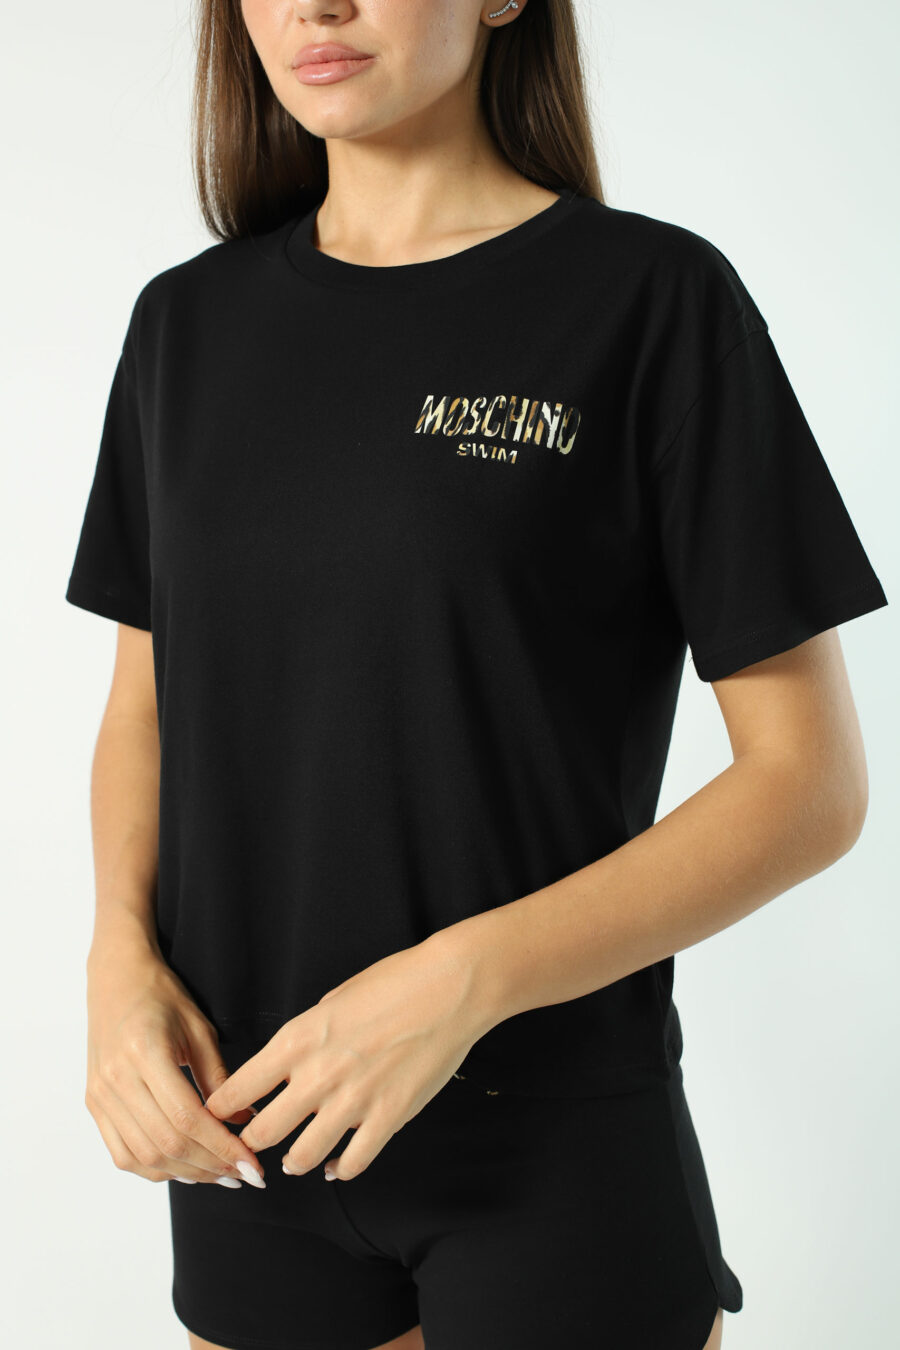 Camiseta negra con minilogo dorado con strass y nudo frontal - Photos 2866